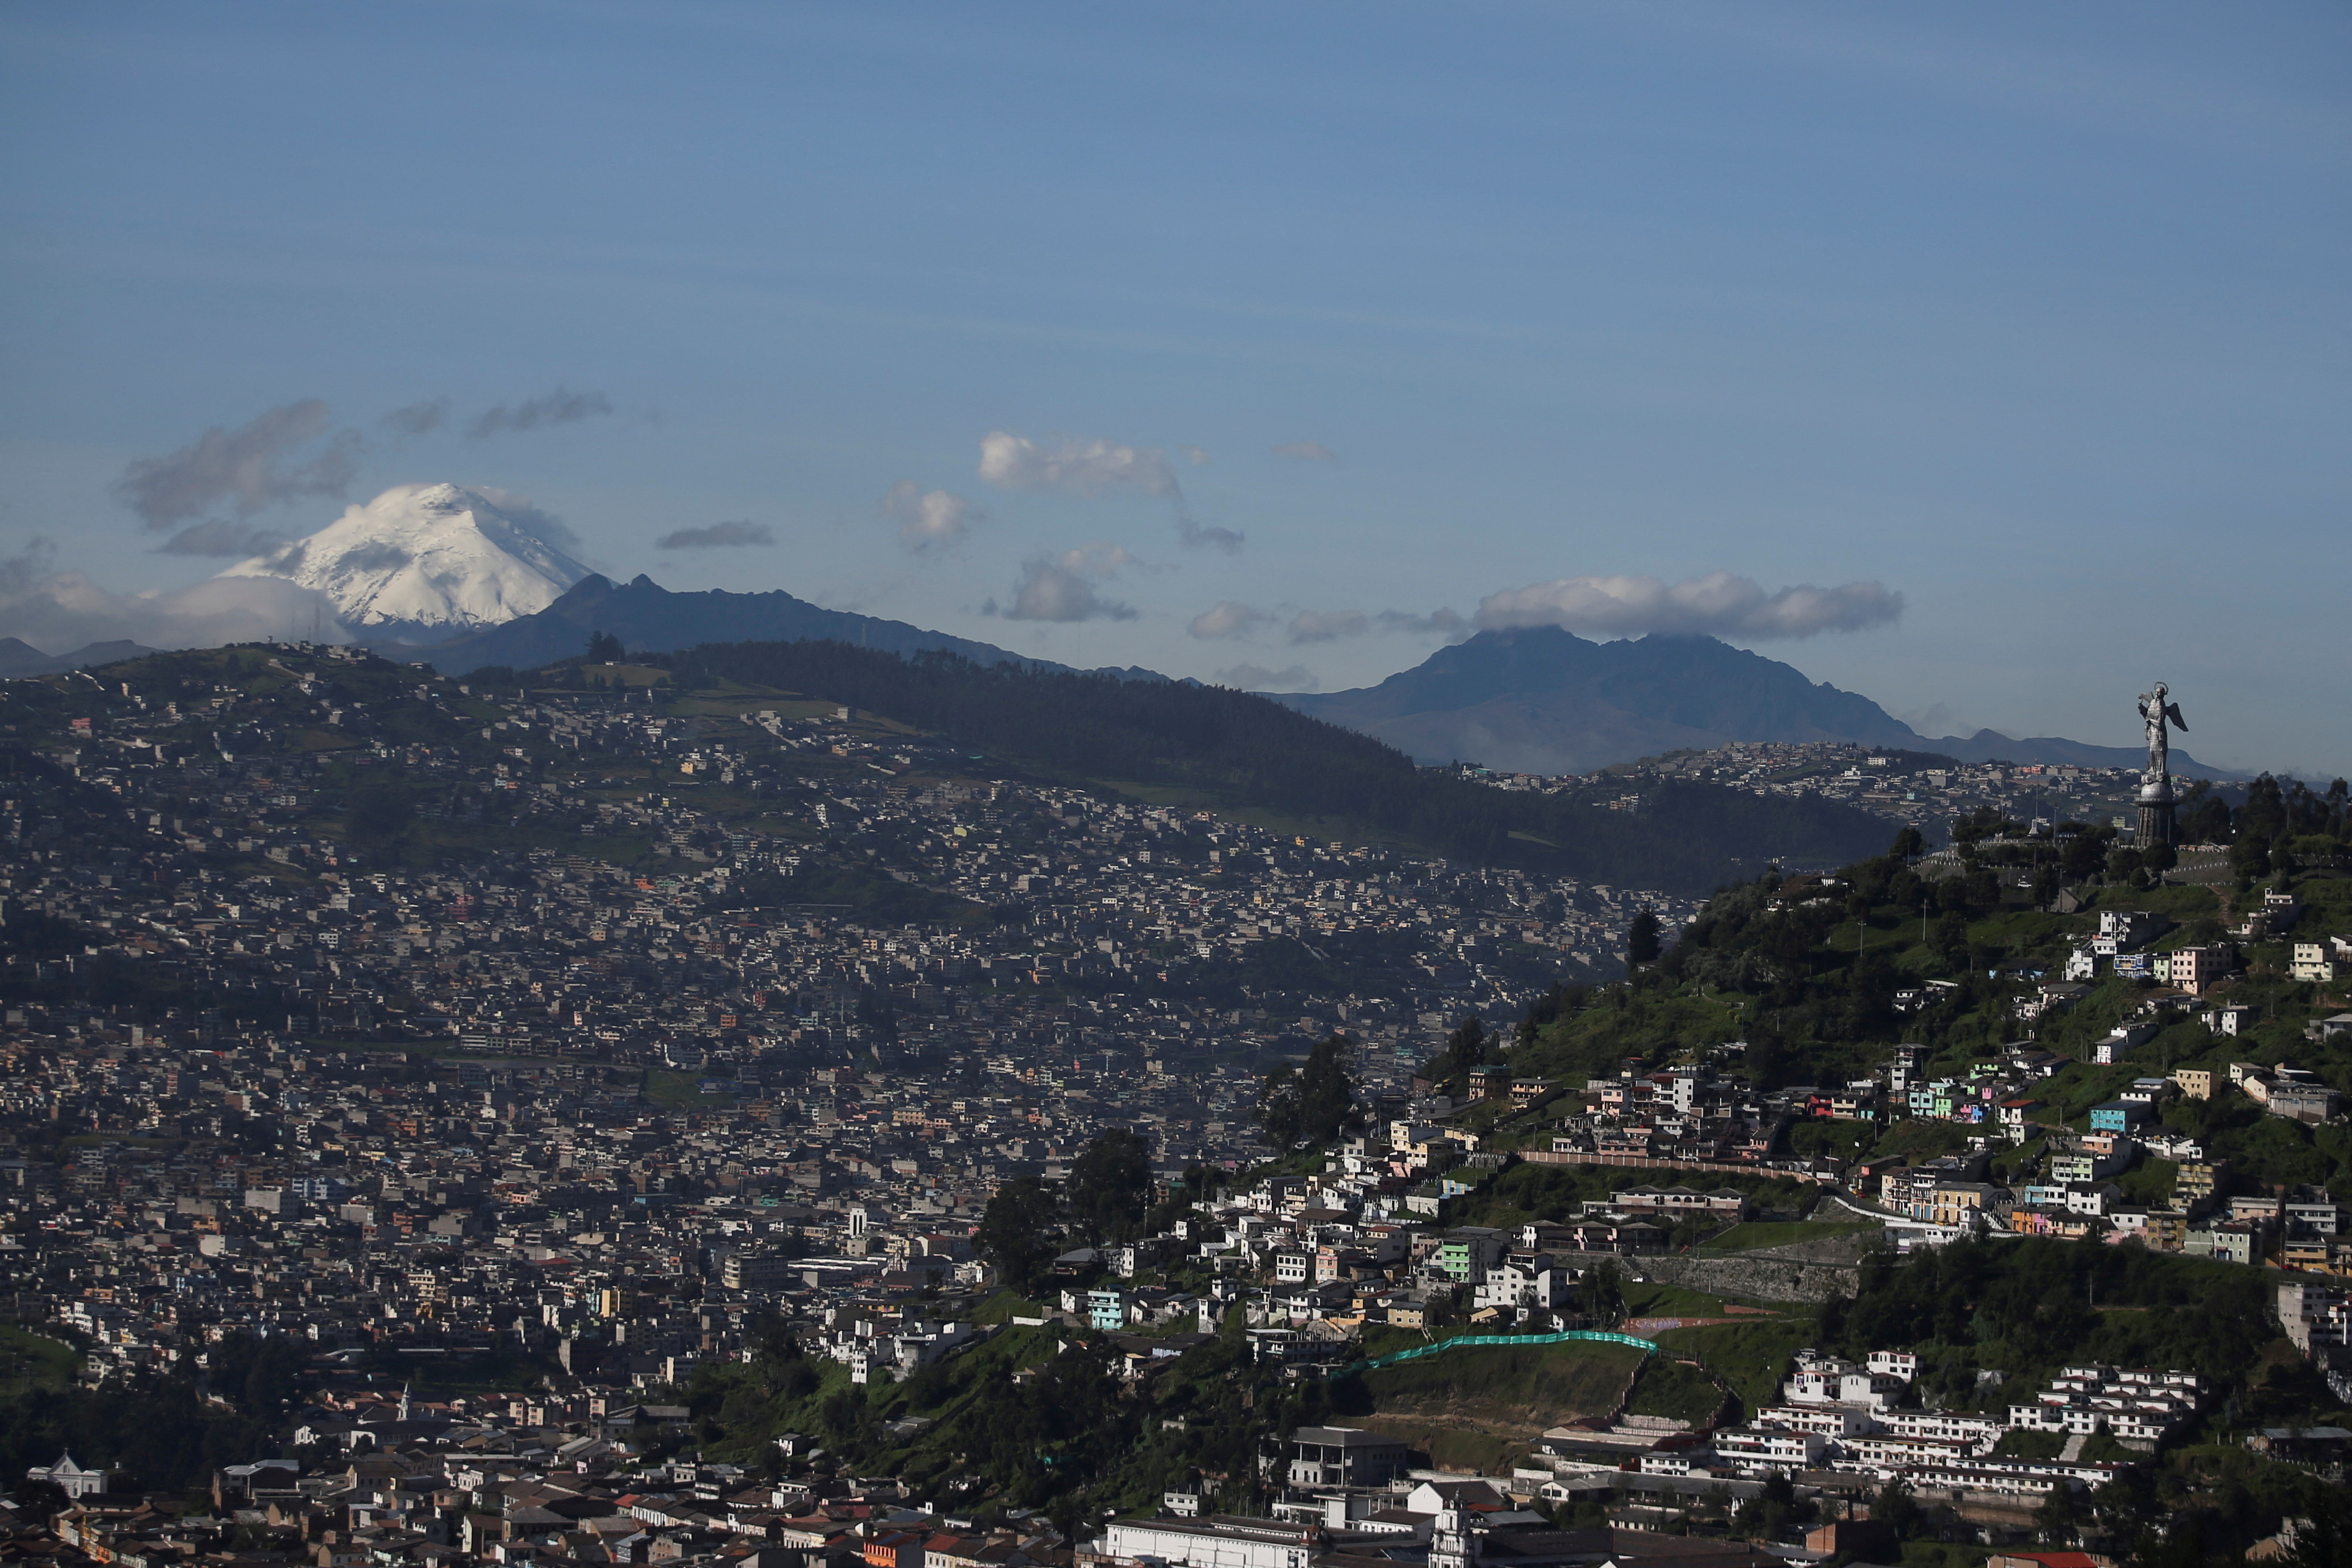 La ceniza emitida por el volcán Cotopaxi ha alcanzado a varias poblaciones al sur de Quito desde su actual periodo eruptivo. (REUTERS/Luisa Gonzalez/File Photo)